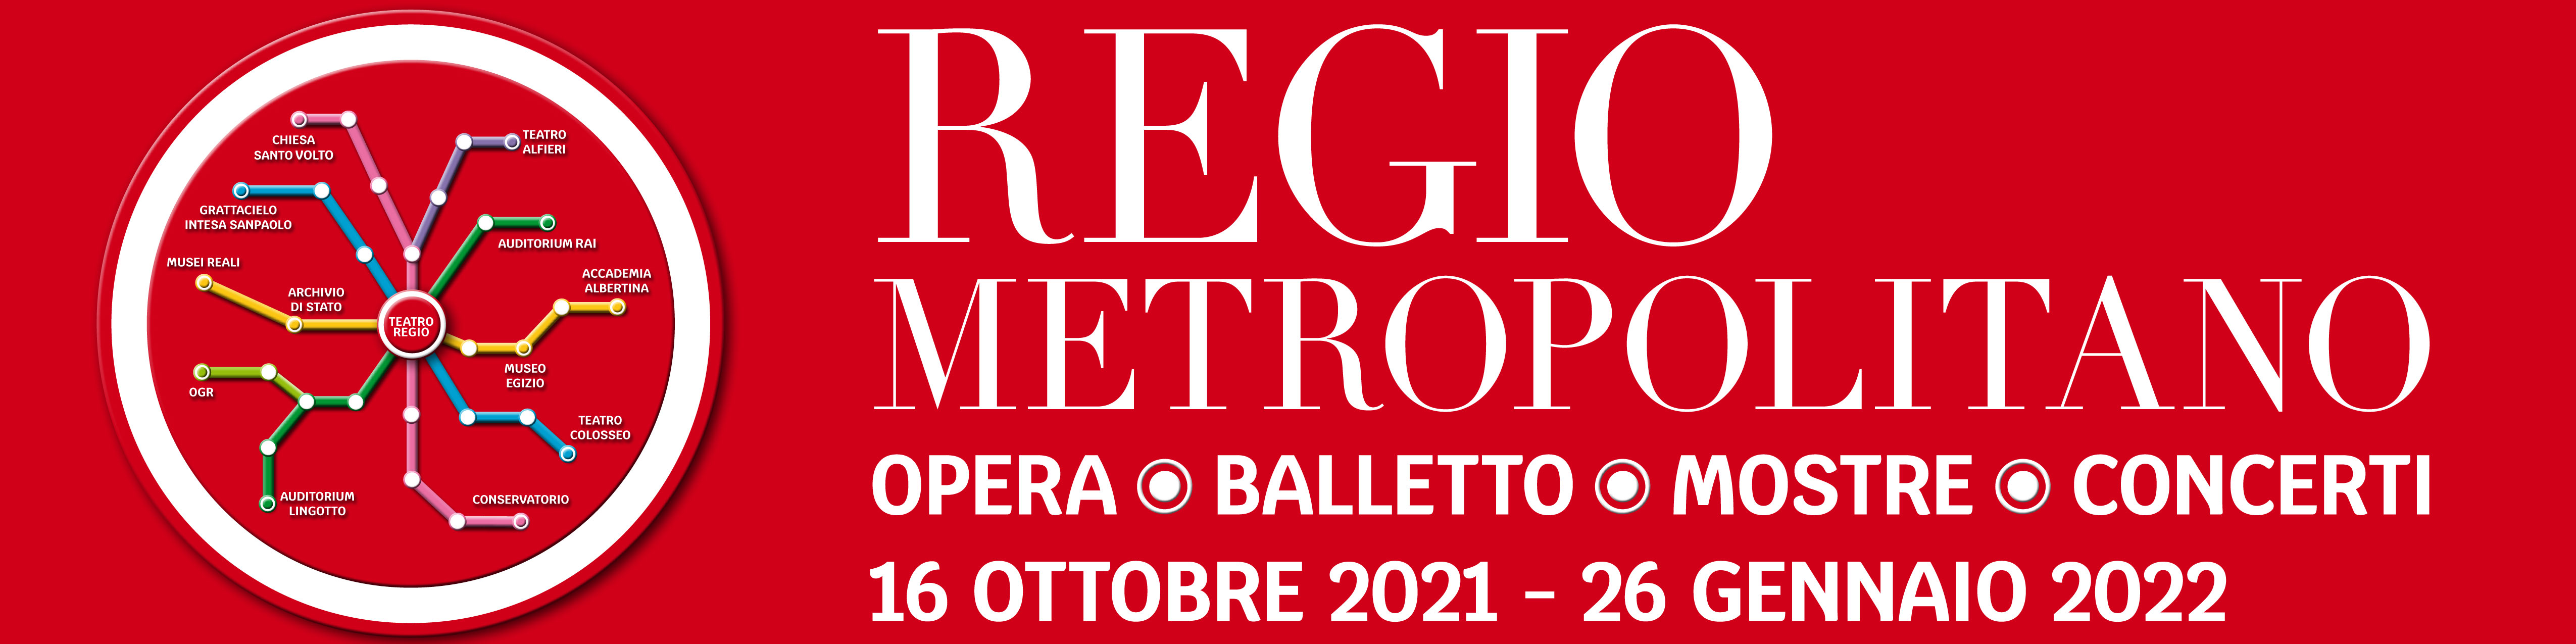 Regio Metropolitano